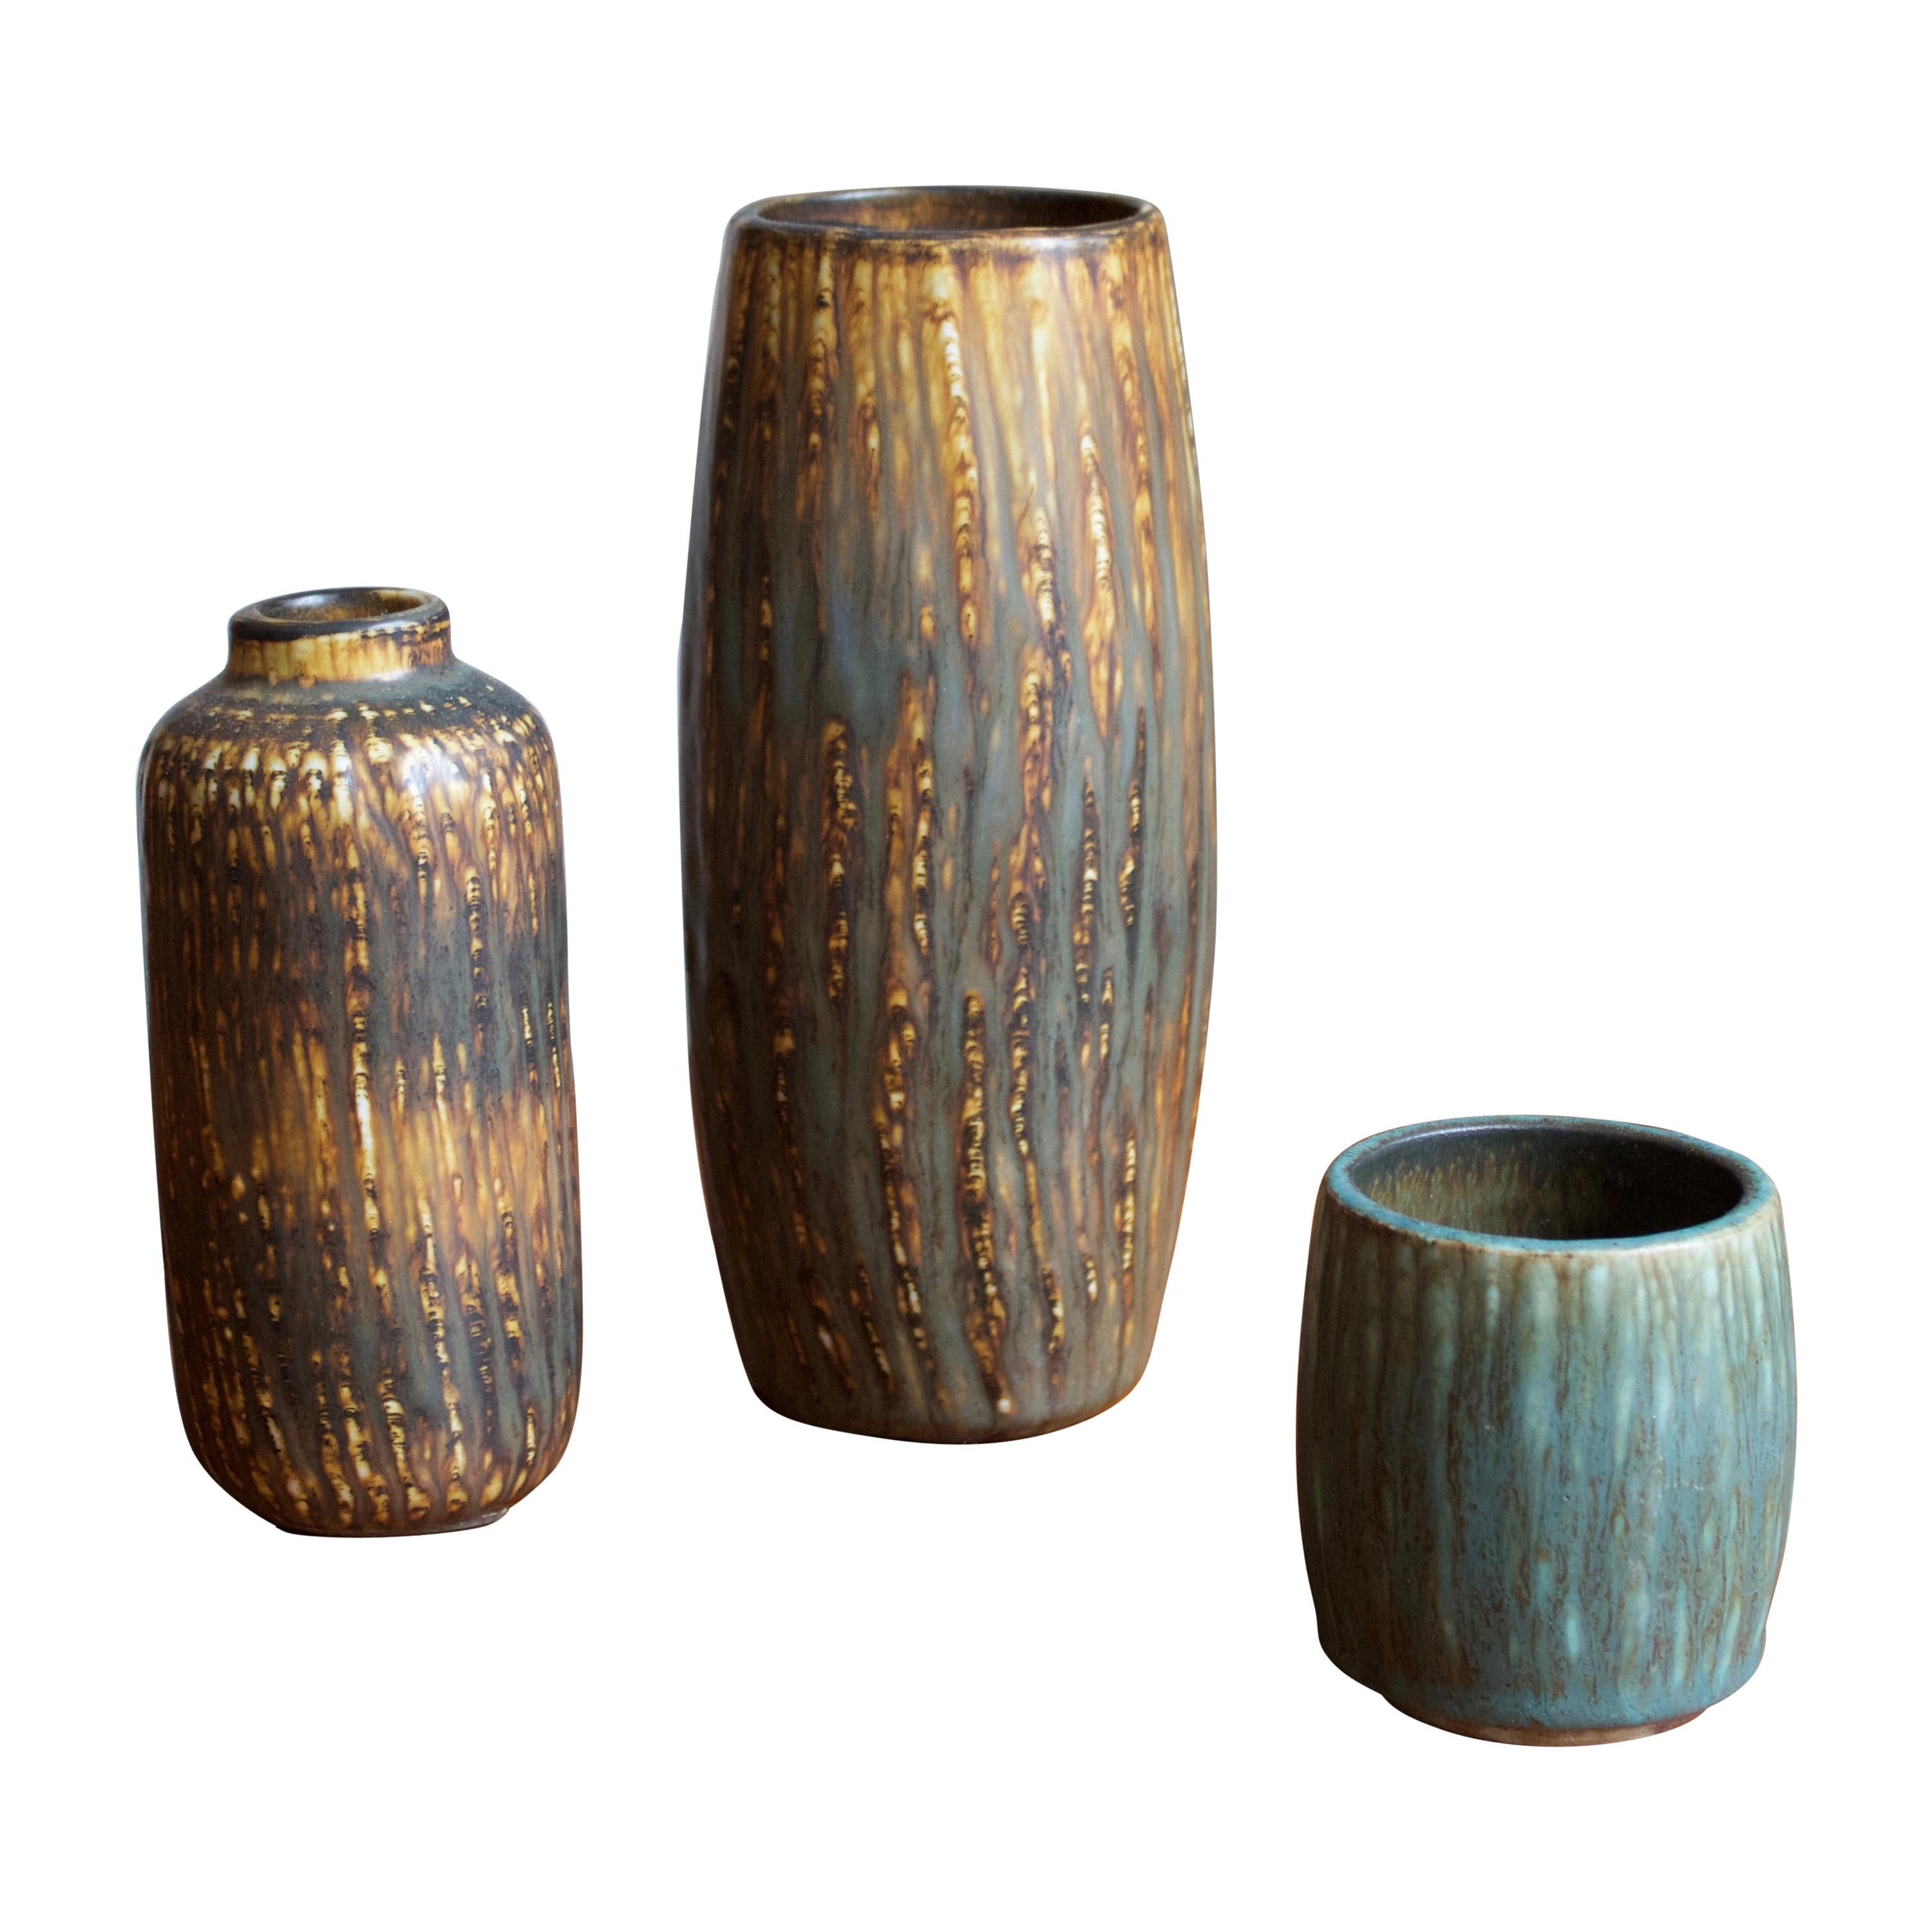 Gunnar Nylund, Vases, Glazed Stoneware, Rörstand, Sweden, 1950s